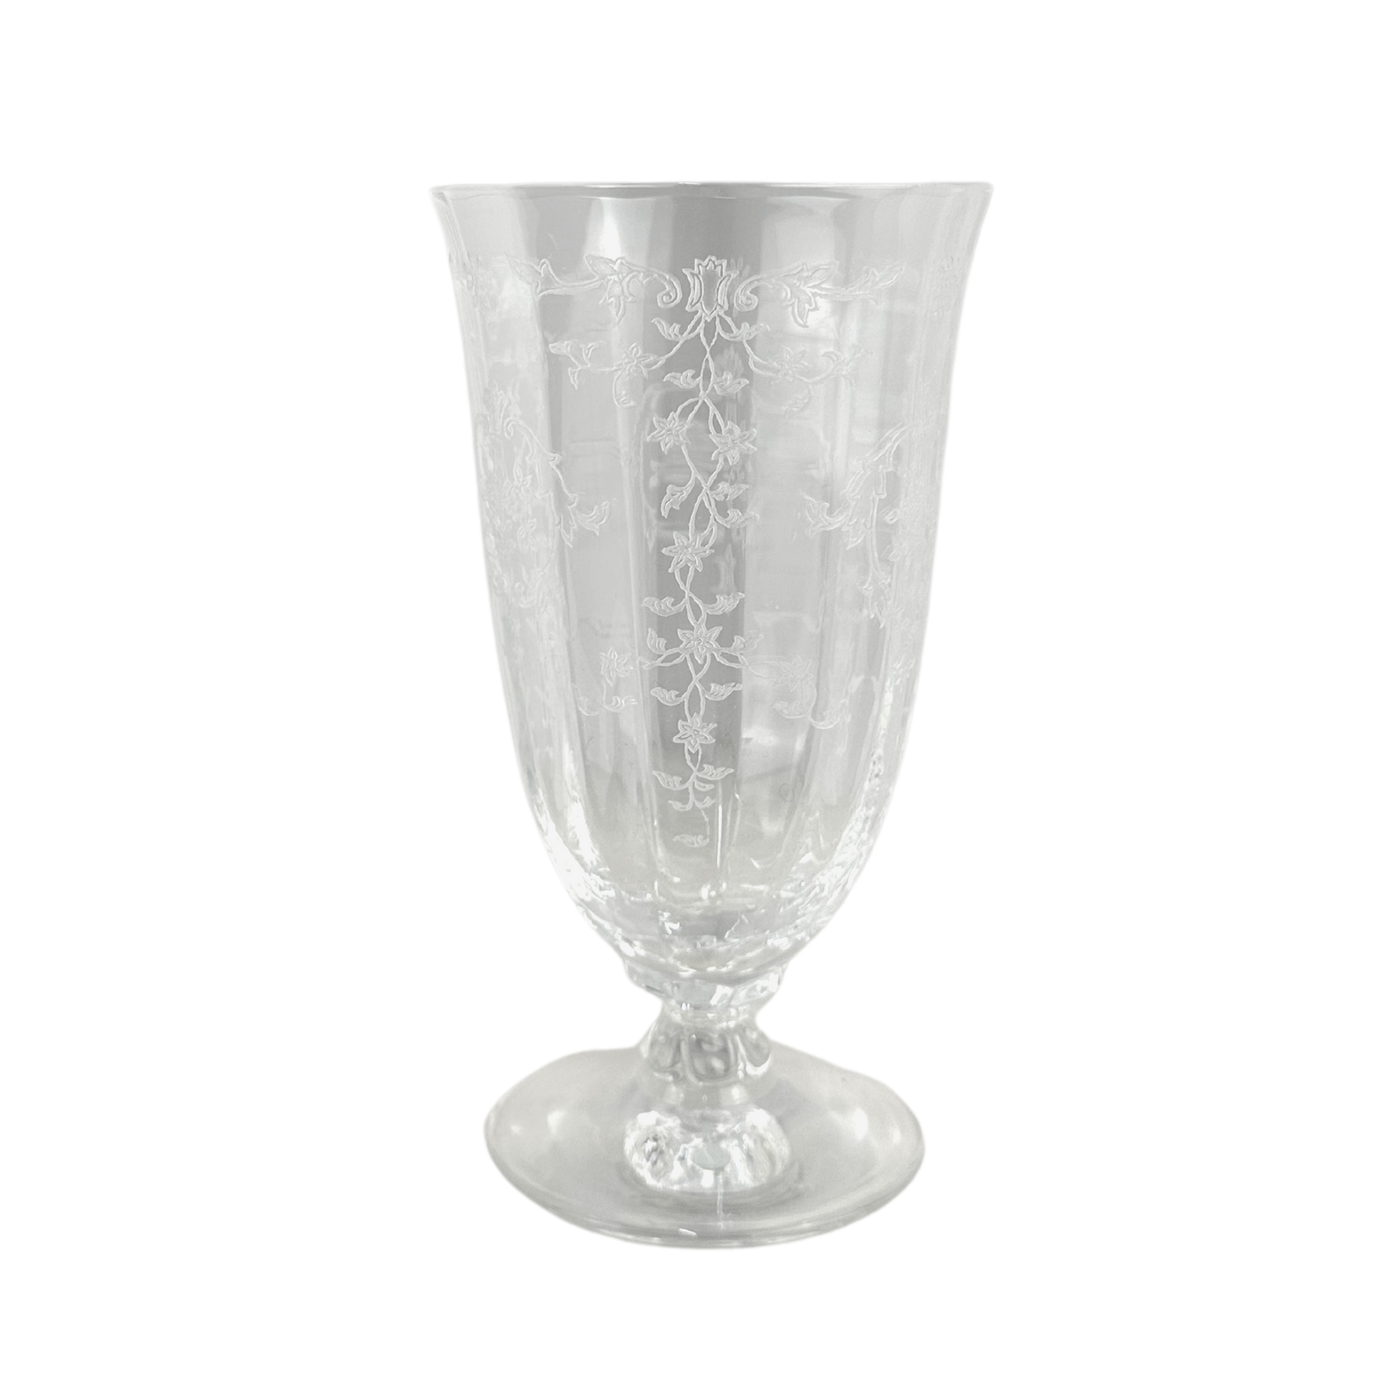 Vintage Fostoria "Navarre" Crystal Iced Tea Glasses, Set of 10